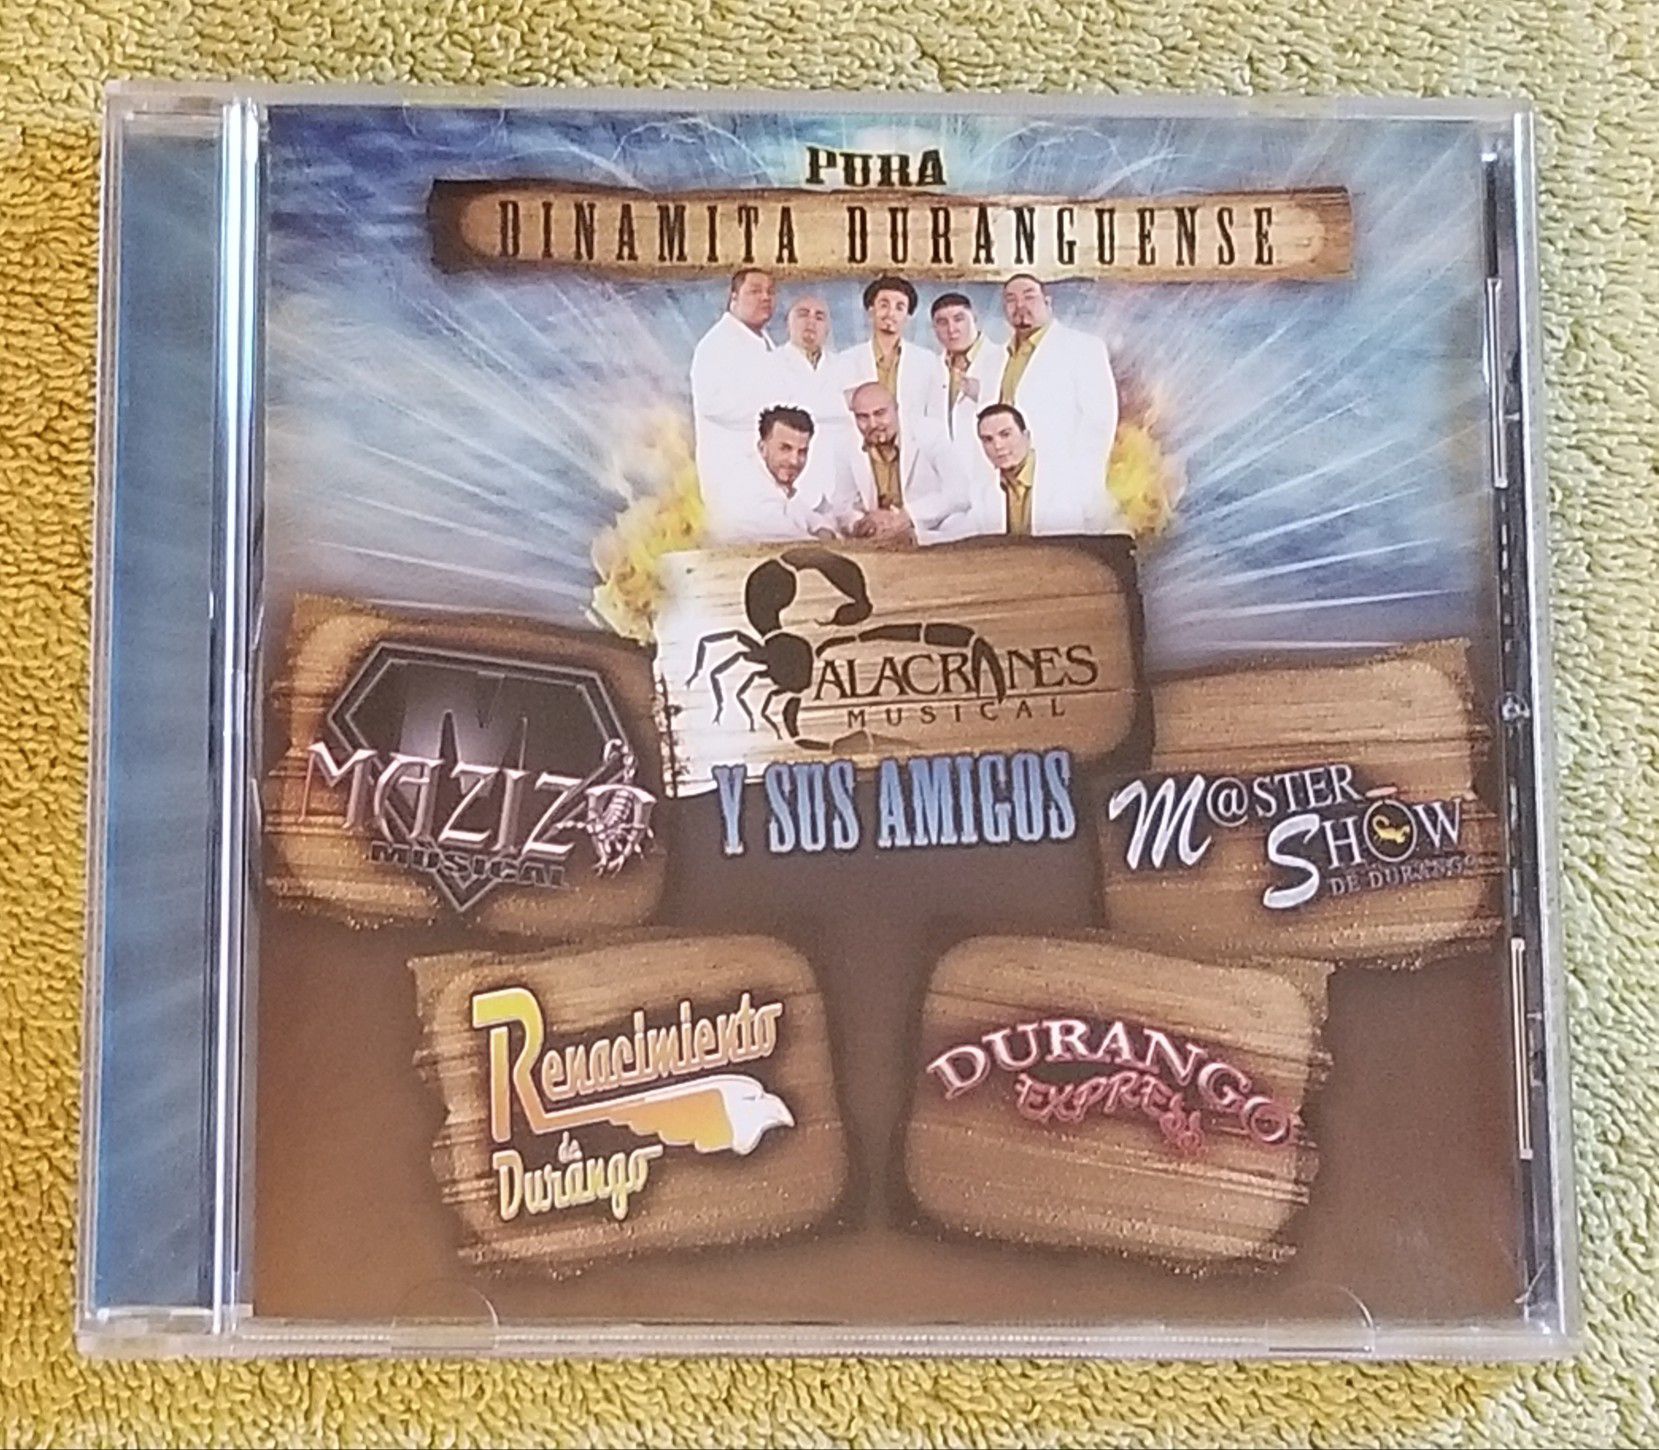 Alacranes Musical Y Sus Amigos - Pura Dinamita Duranguense CD